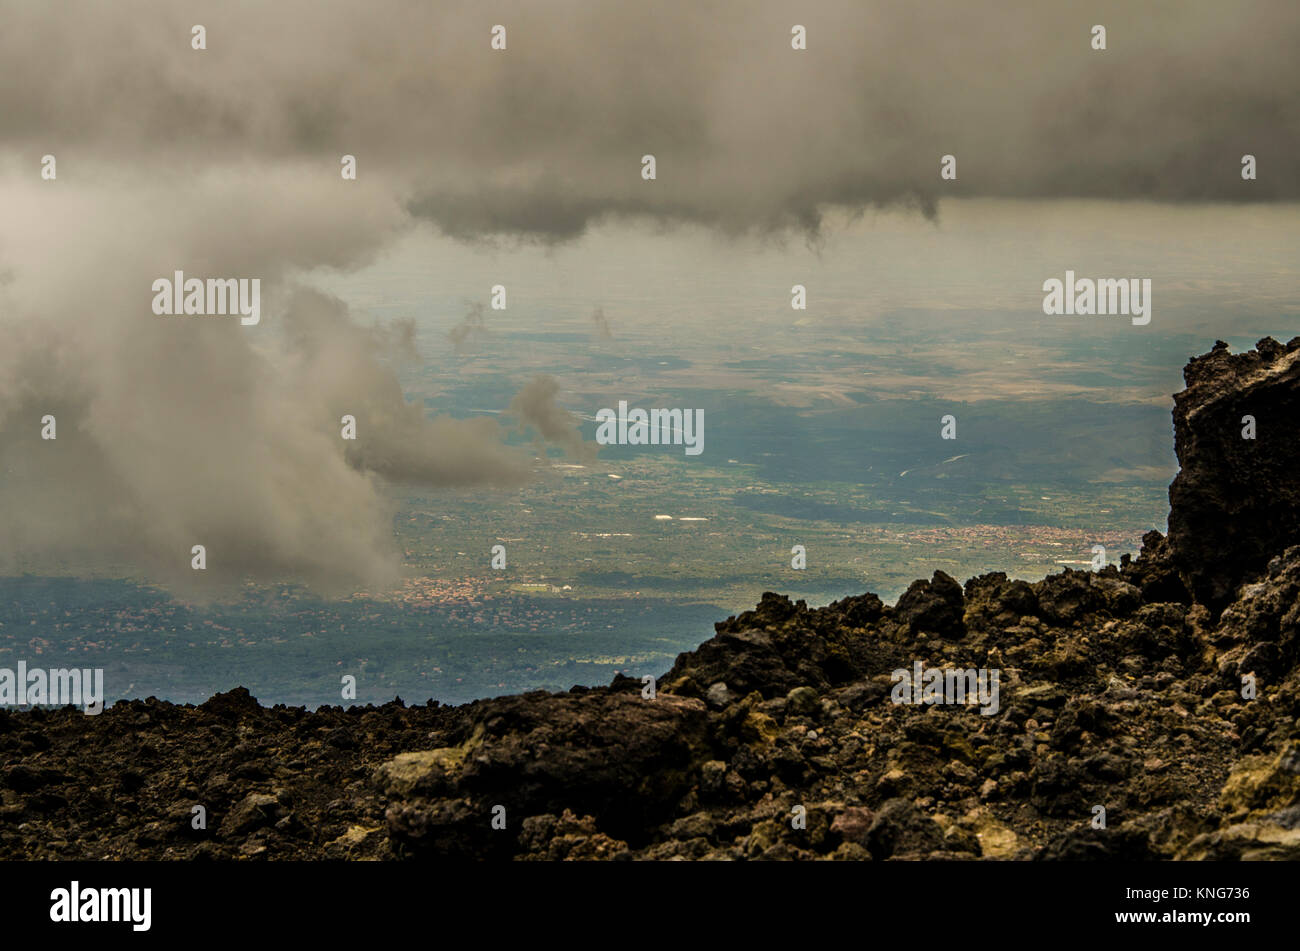 Vista del territorio de Sicilia entre nubes desde la cima del volcán Etna. Foto de stock